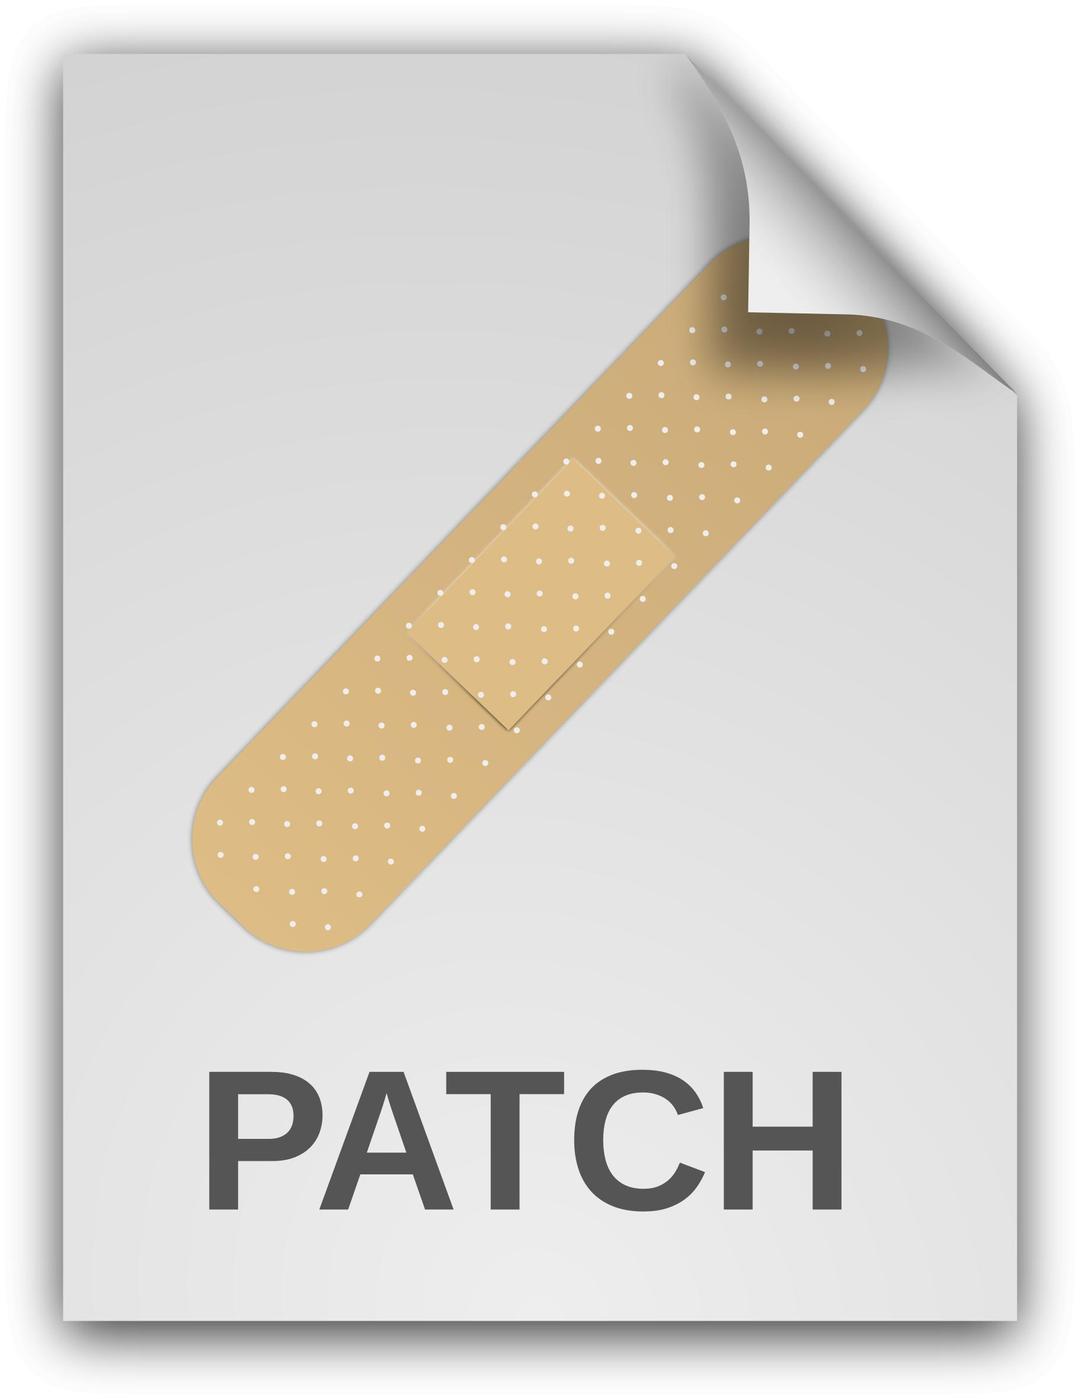 Patch Document png transparent